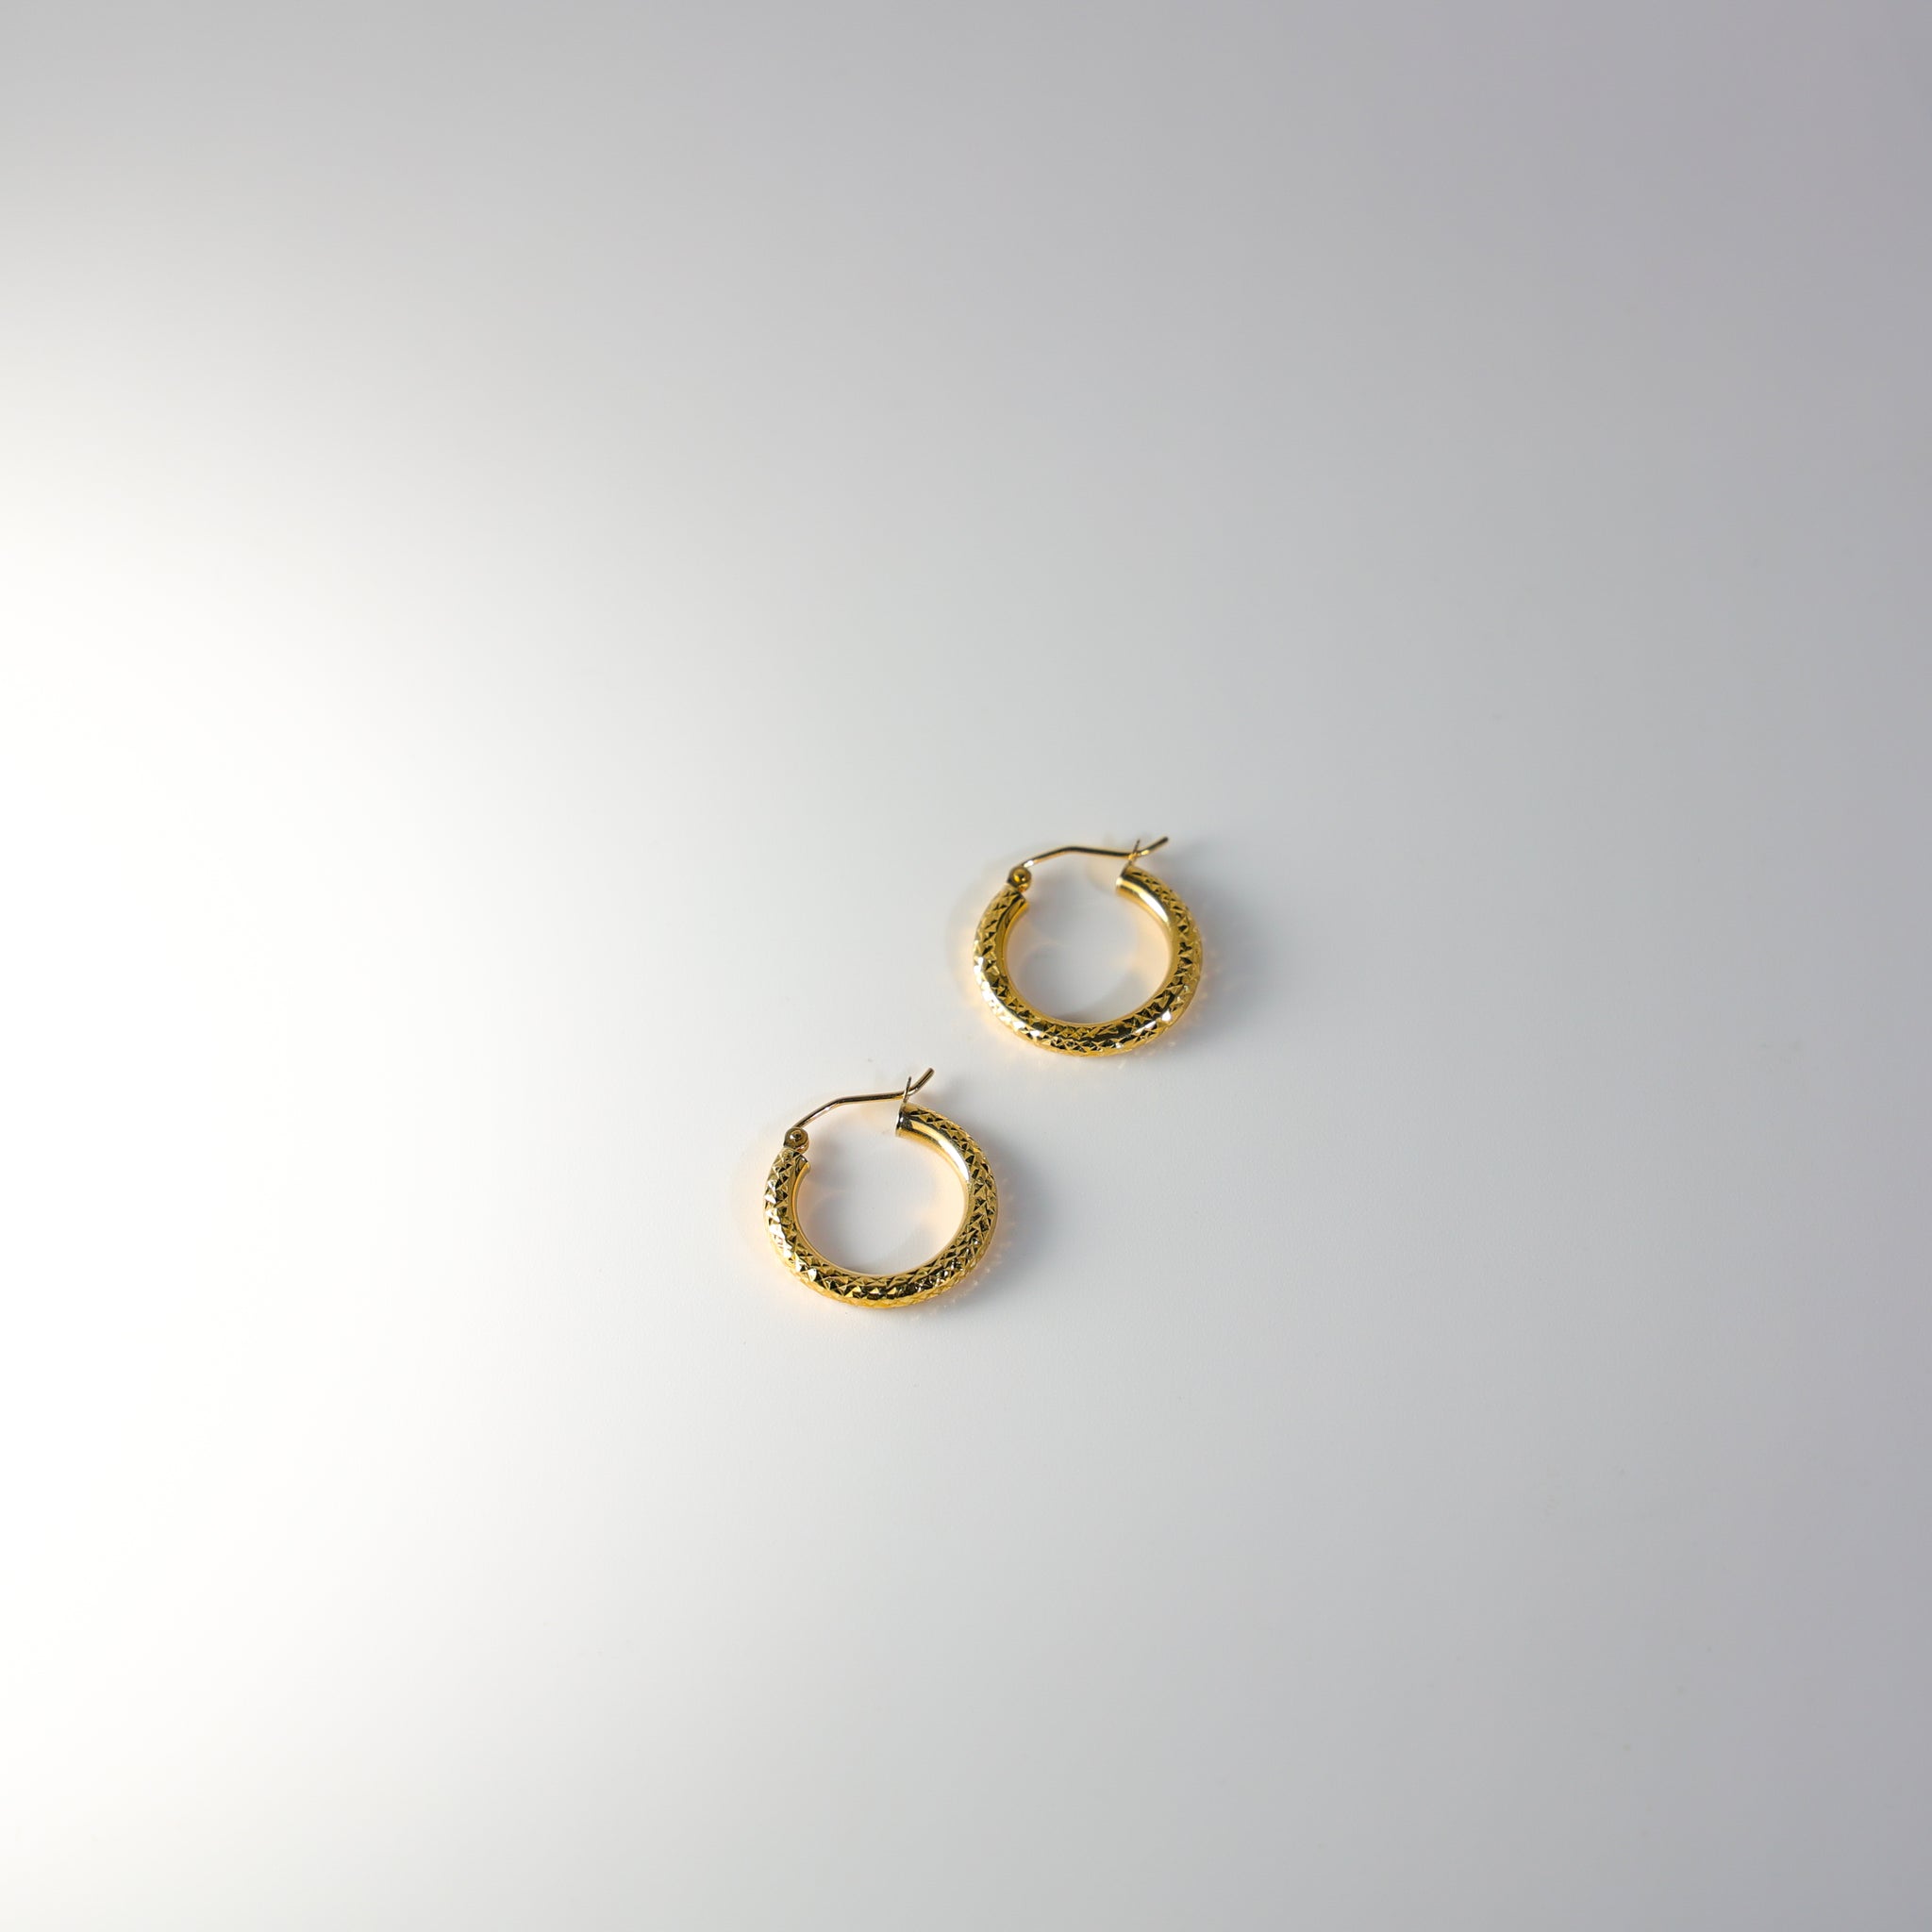 Gold Diamond Cut Huggie Hoop Earrings Gold 20mm Wide Model-0080 - Charlie & Co. Jewelry